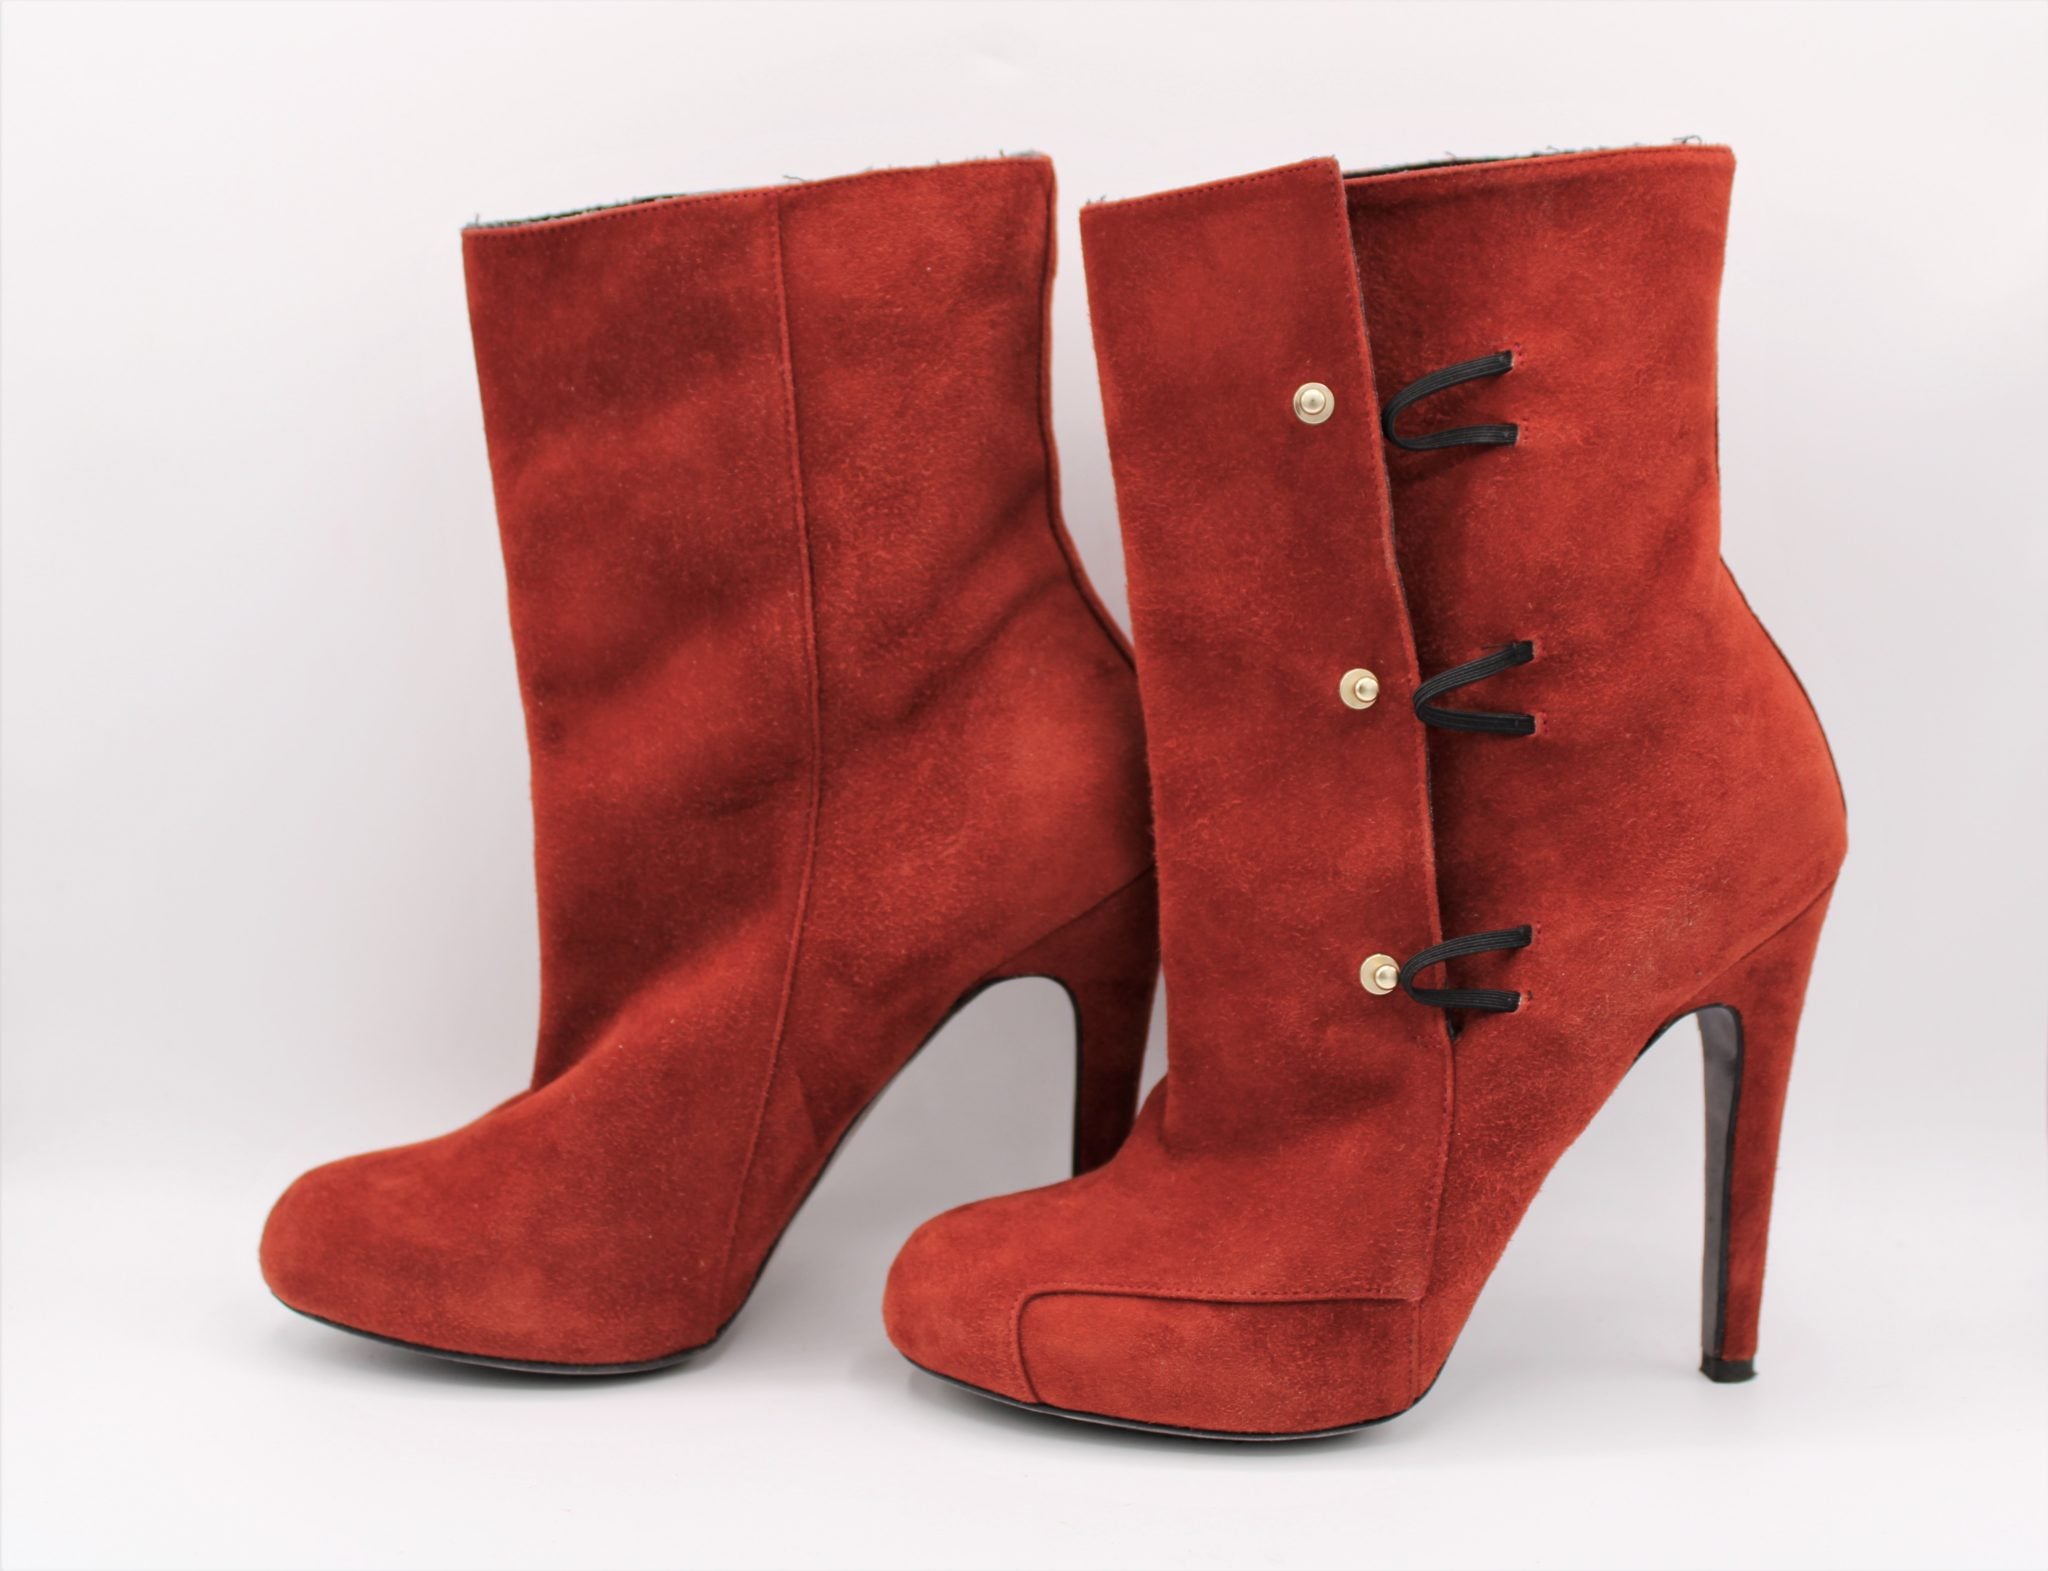 Aperlai Paris Heeled Boots | Size 36 (US Size 4 1/2)